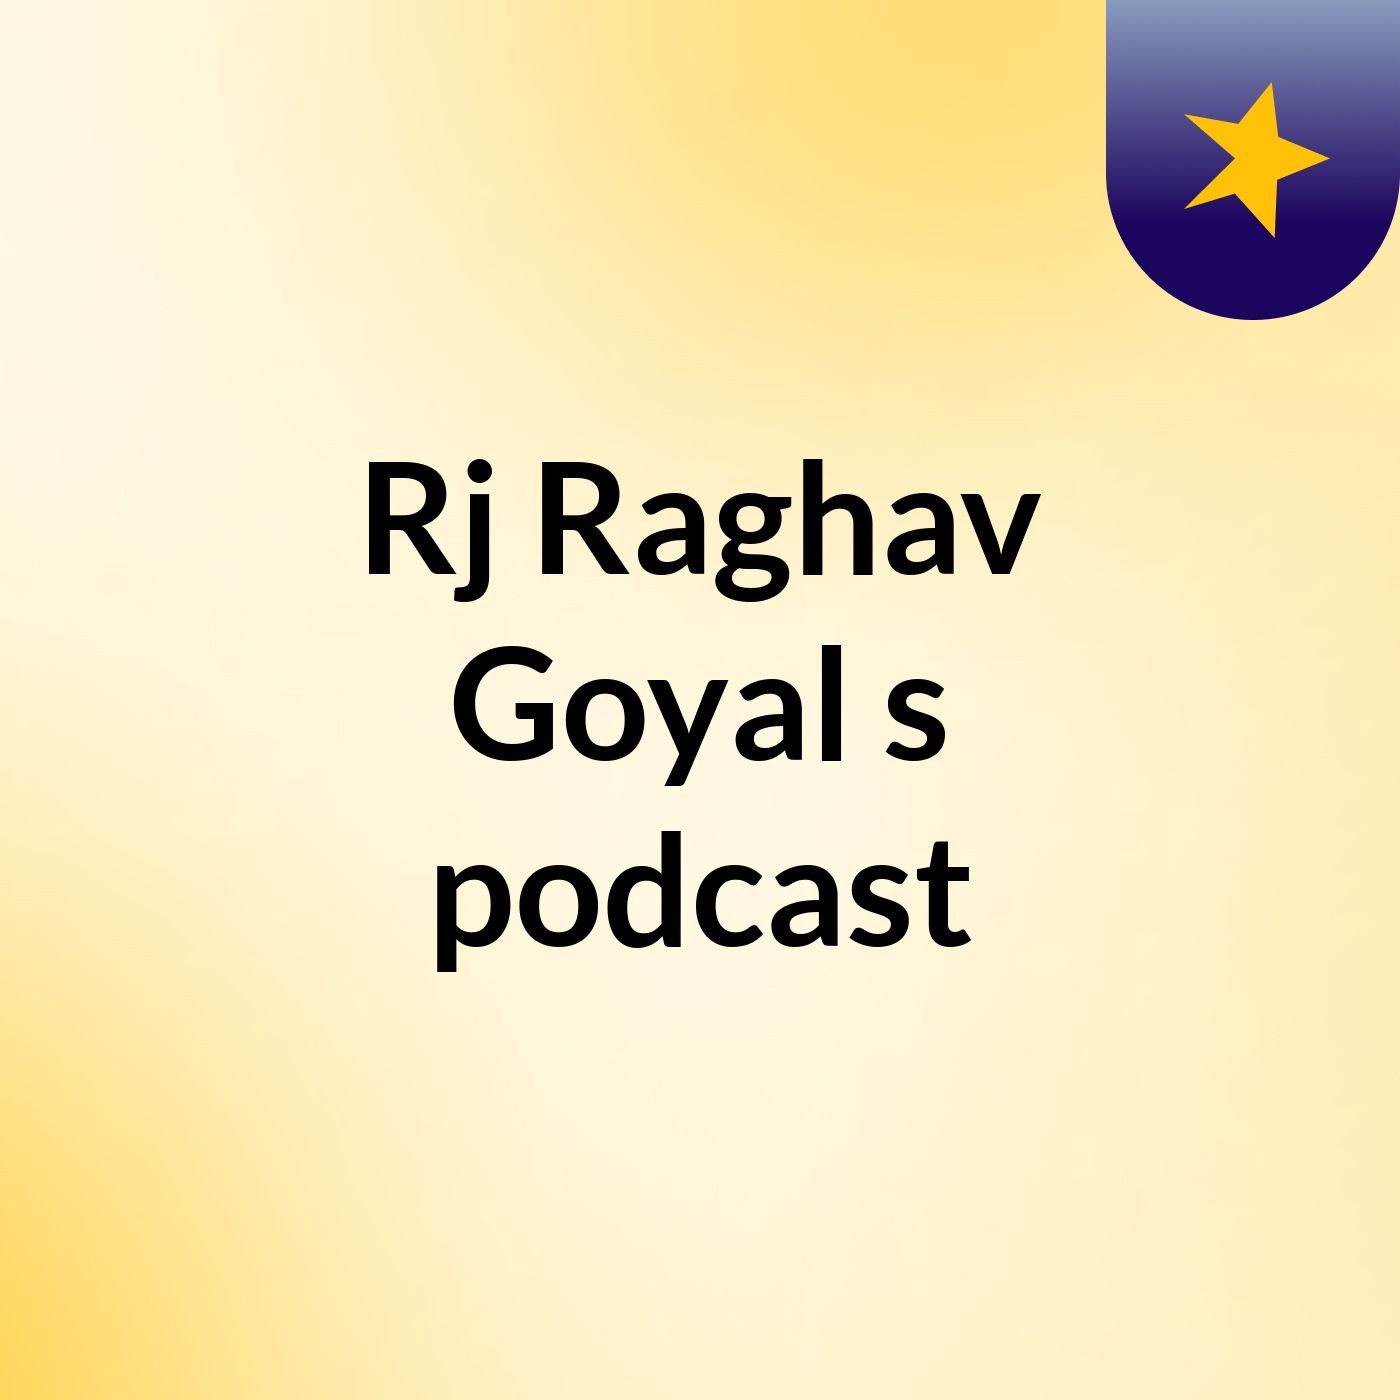 Episode 4 - Rj Raghav Goyal's podcast